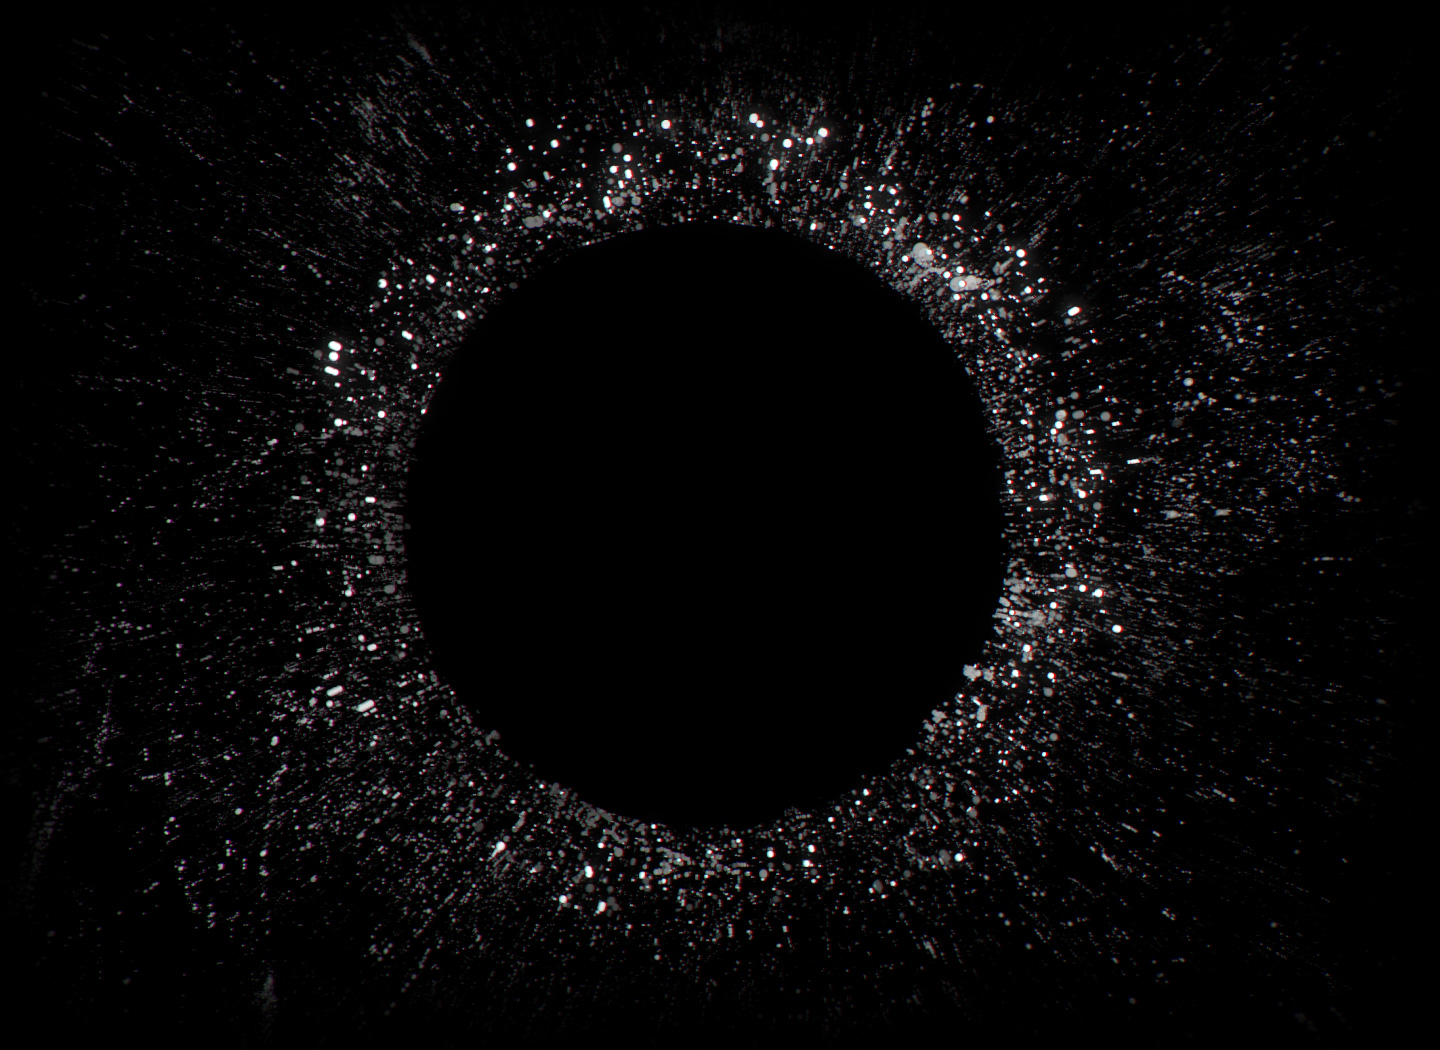 En animasjon av høyre øretelefon er plassert i sentrum av en ring av små lydpartikler som sprer seg ut fra senteret.